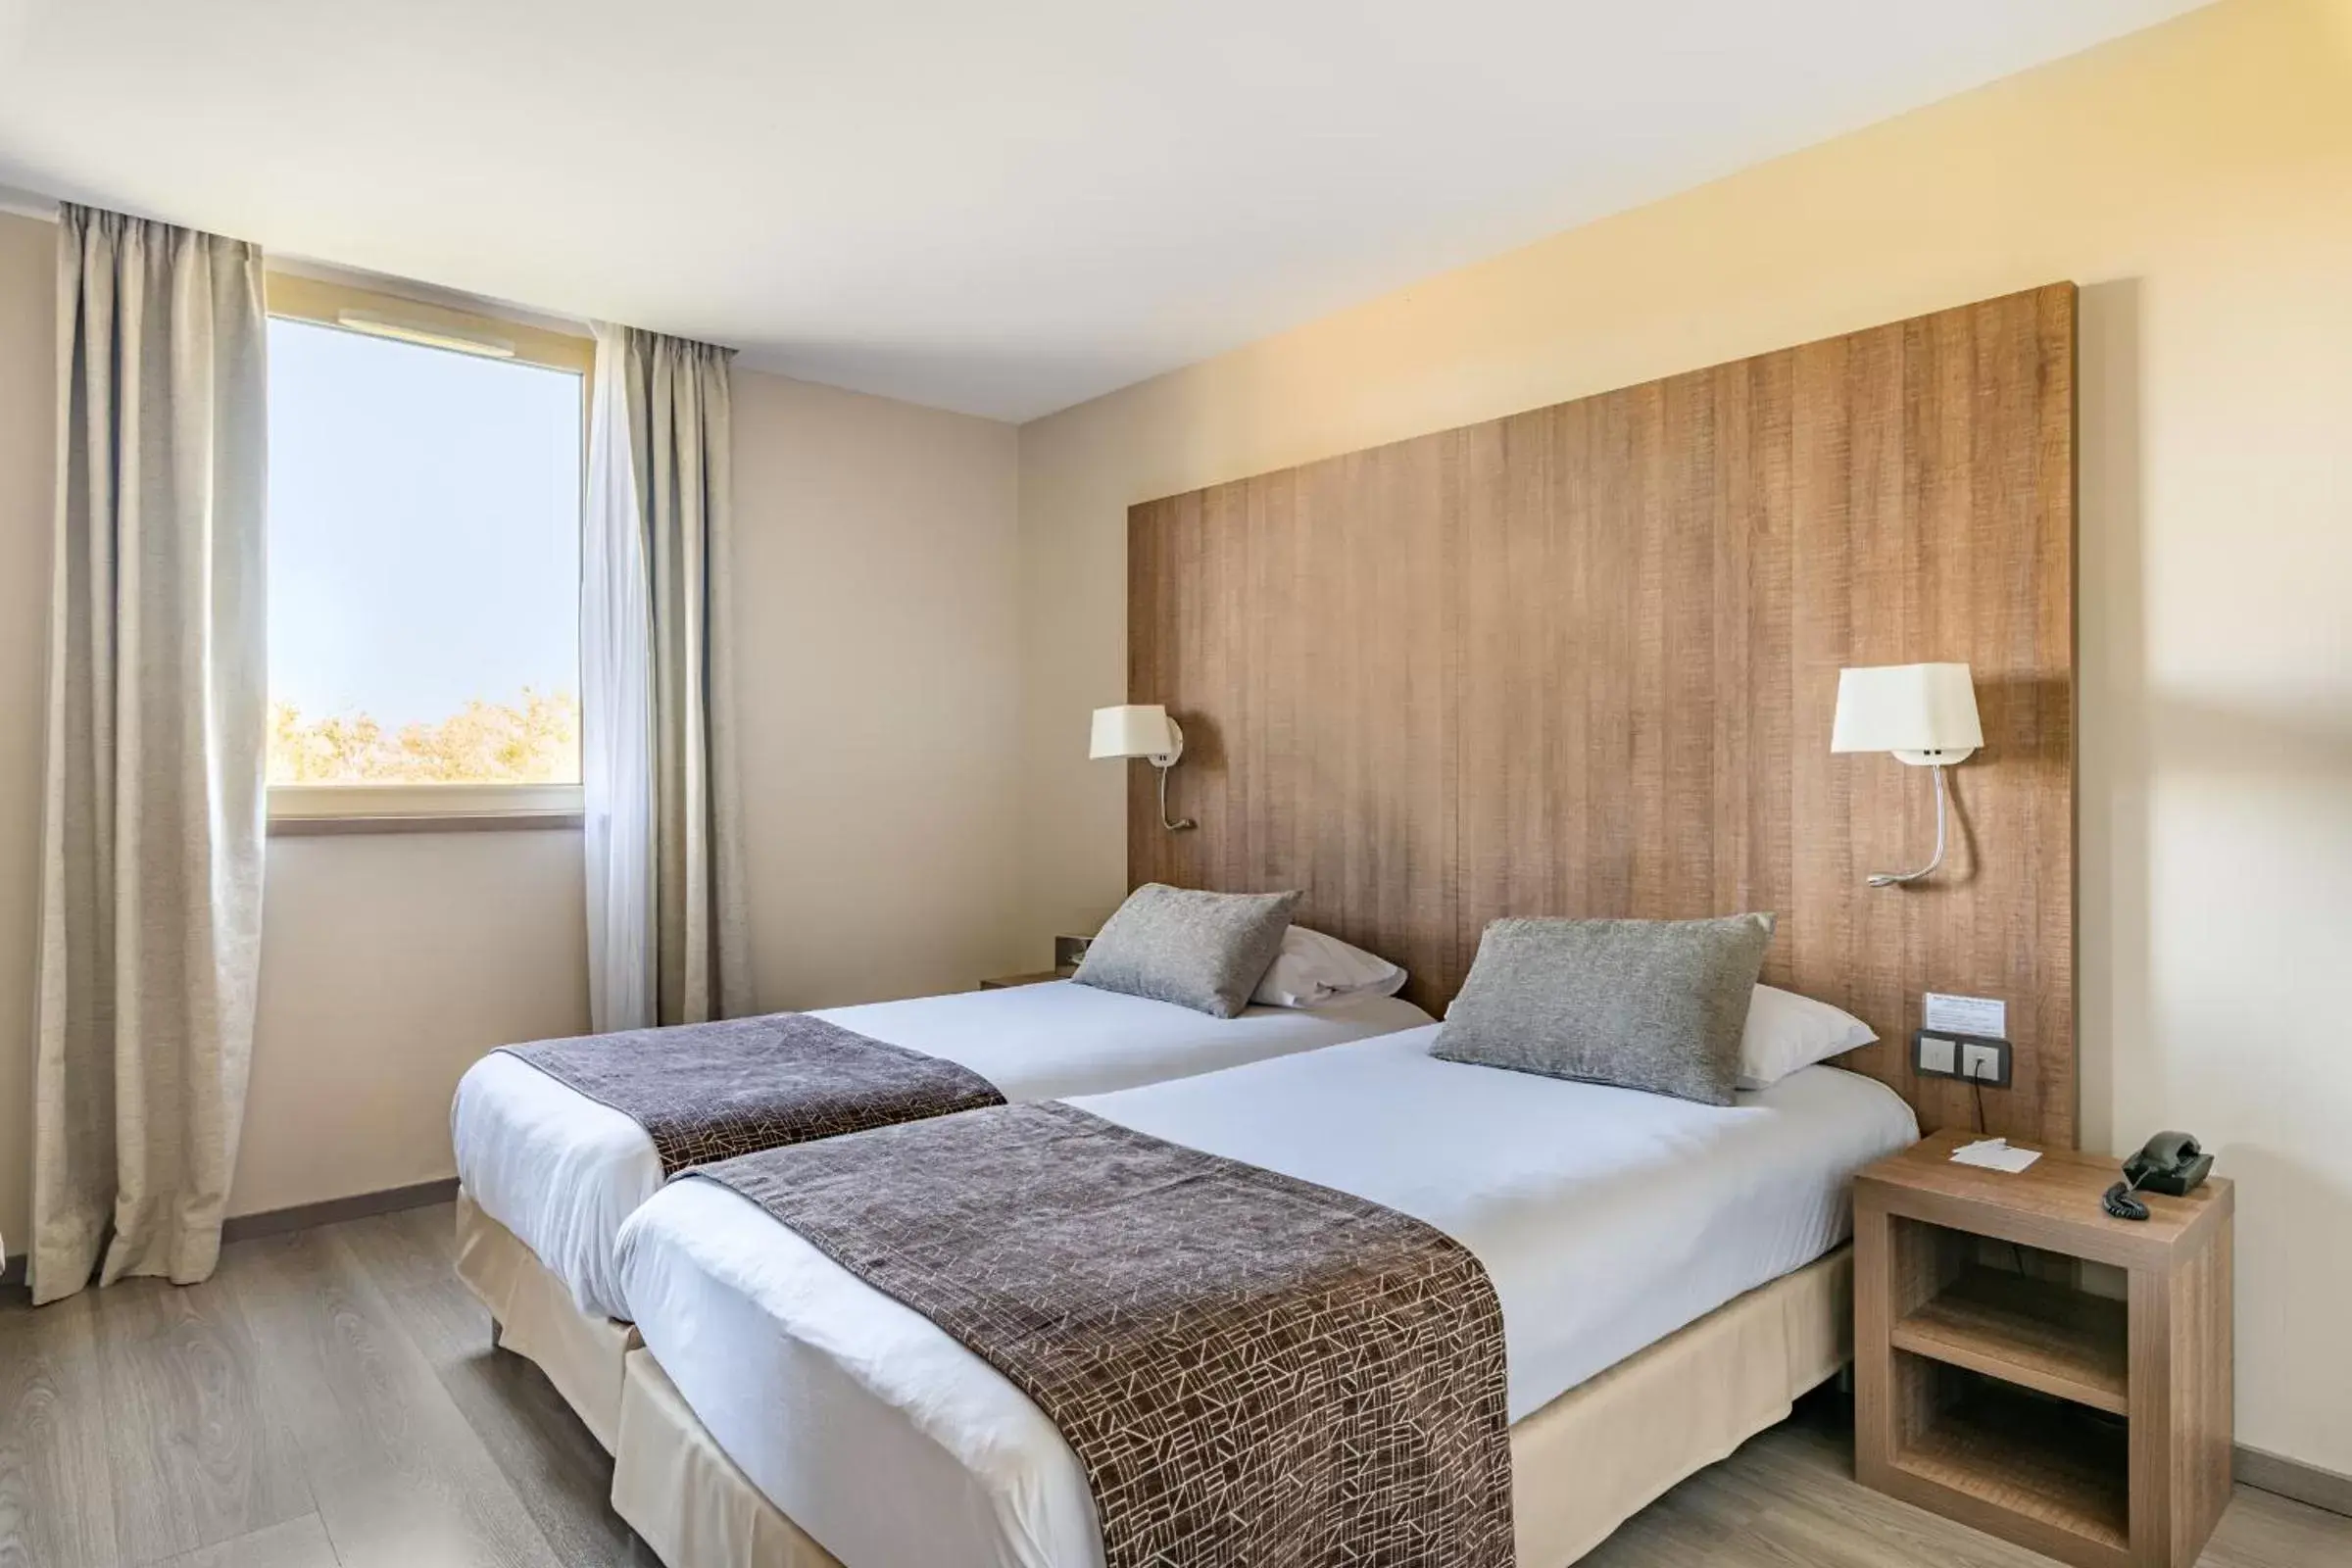 Bed in Best Western Hôtel des Barolles - Lyon Sud